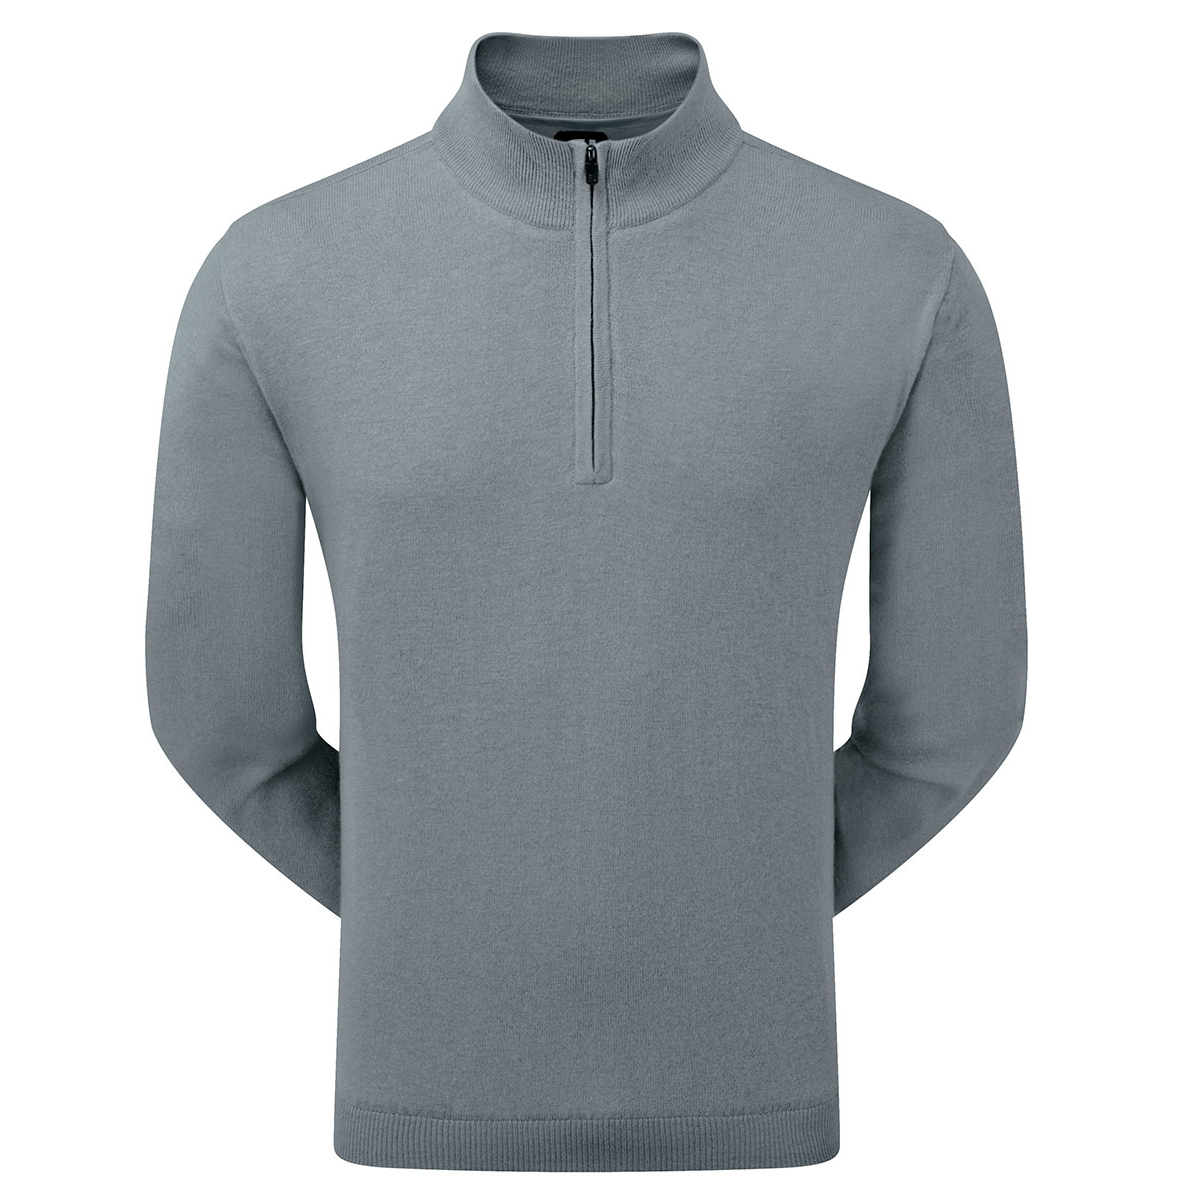 FootJoy Lambswool Lined Half Zip Sweater | Online Golf